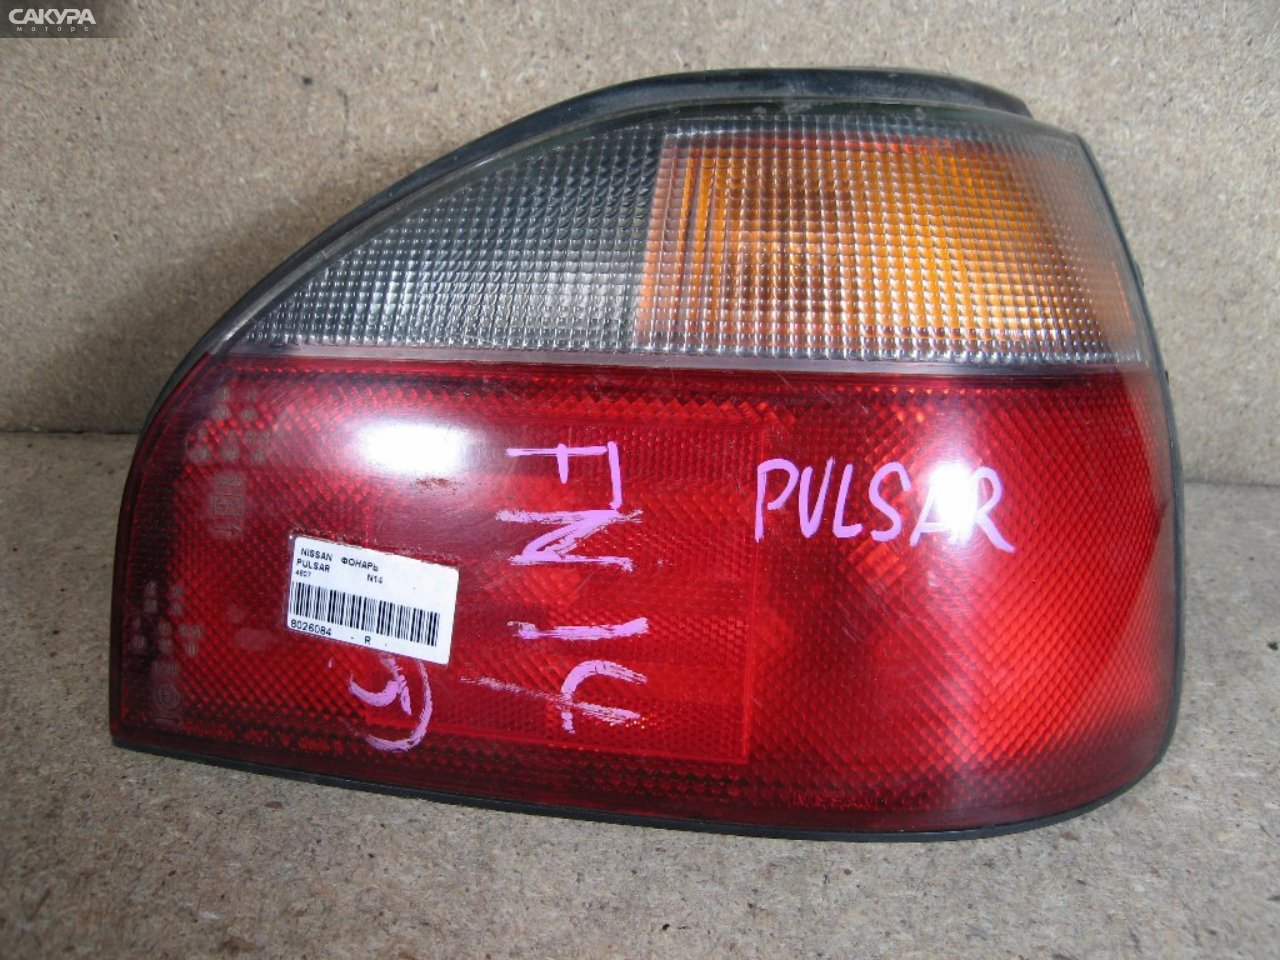 Фонарь стоп-сигнала правый Nissan Pulsar N14 4607: купить в Сакура Абакан.